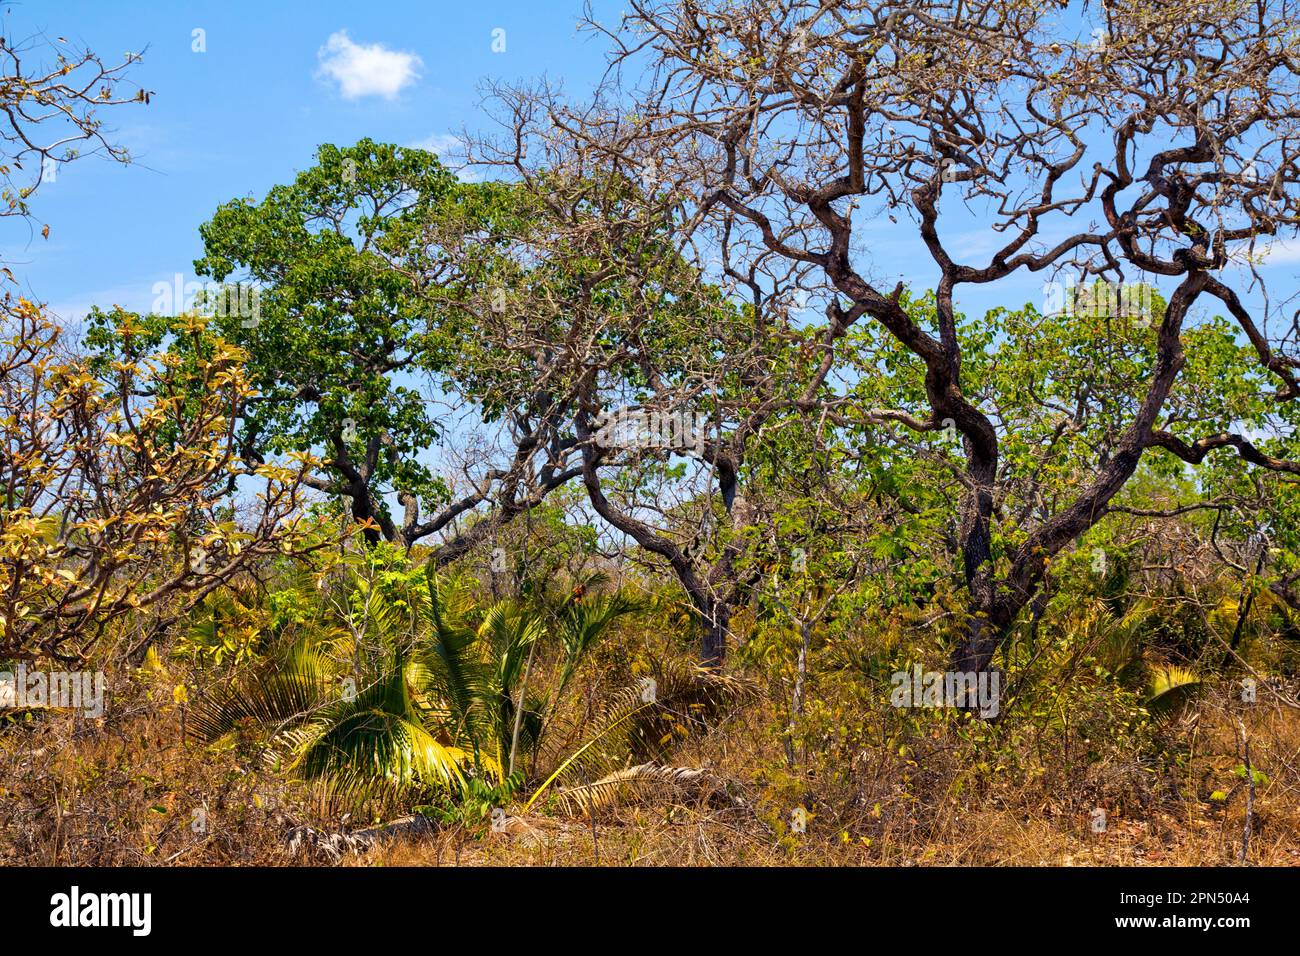 Cerrado (brasilianische Savanne) mit verdrehten Bäumen, Ende der Trockenzeit. Grande Sertão Veredas Nat. Park, Brasilien. Stiellose Palme ist Attalea geraensis. Der Cerrado ist ein Biodiversitätszentrum. Stockfoto